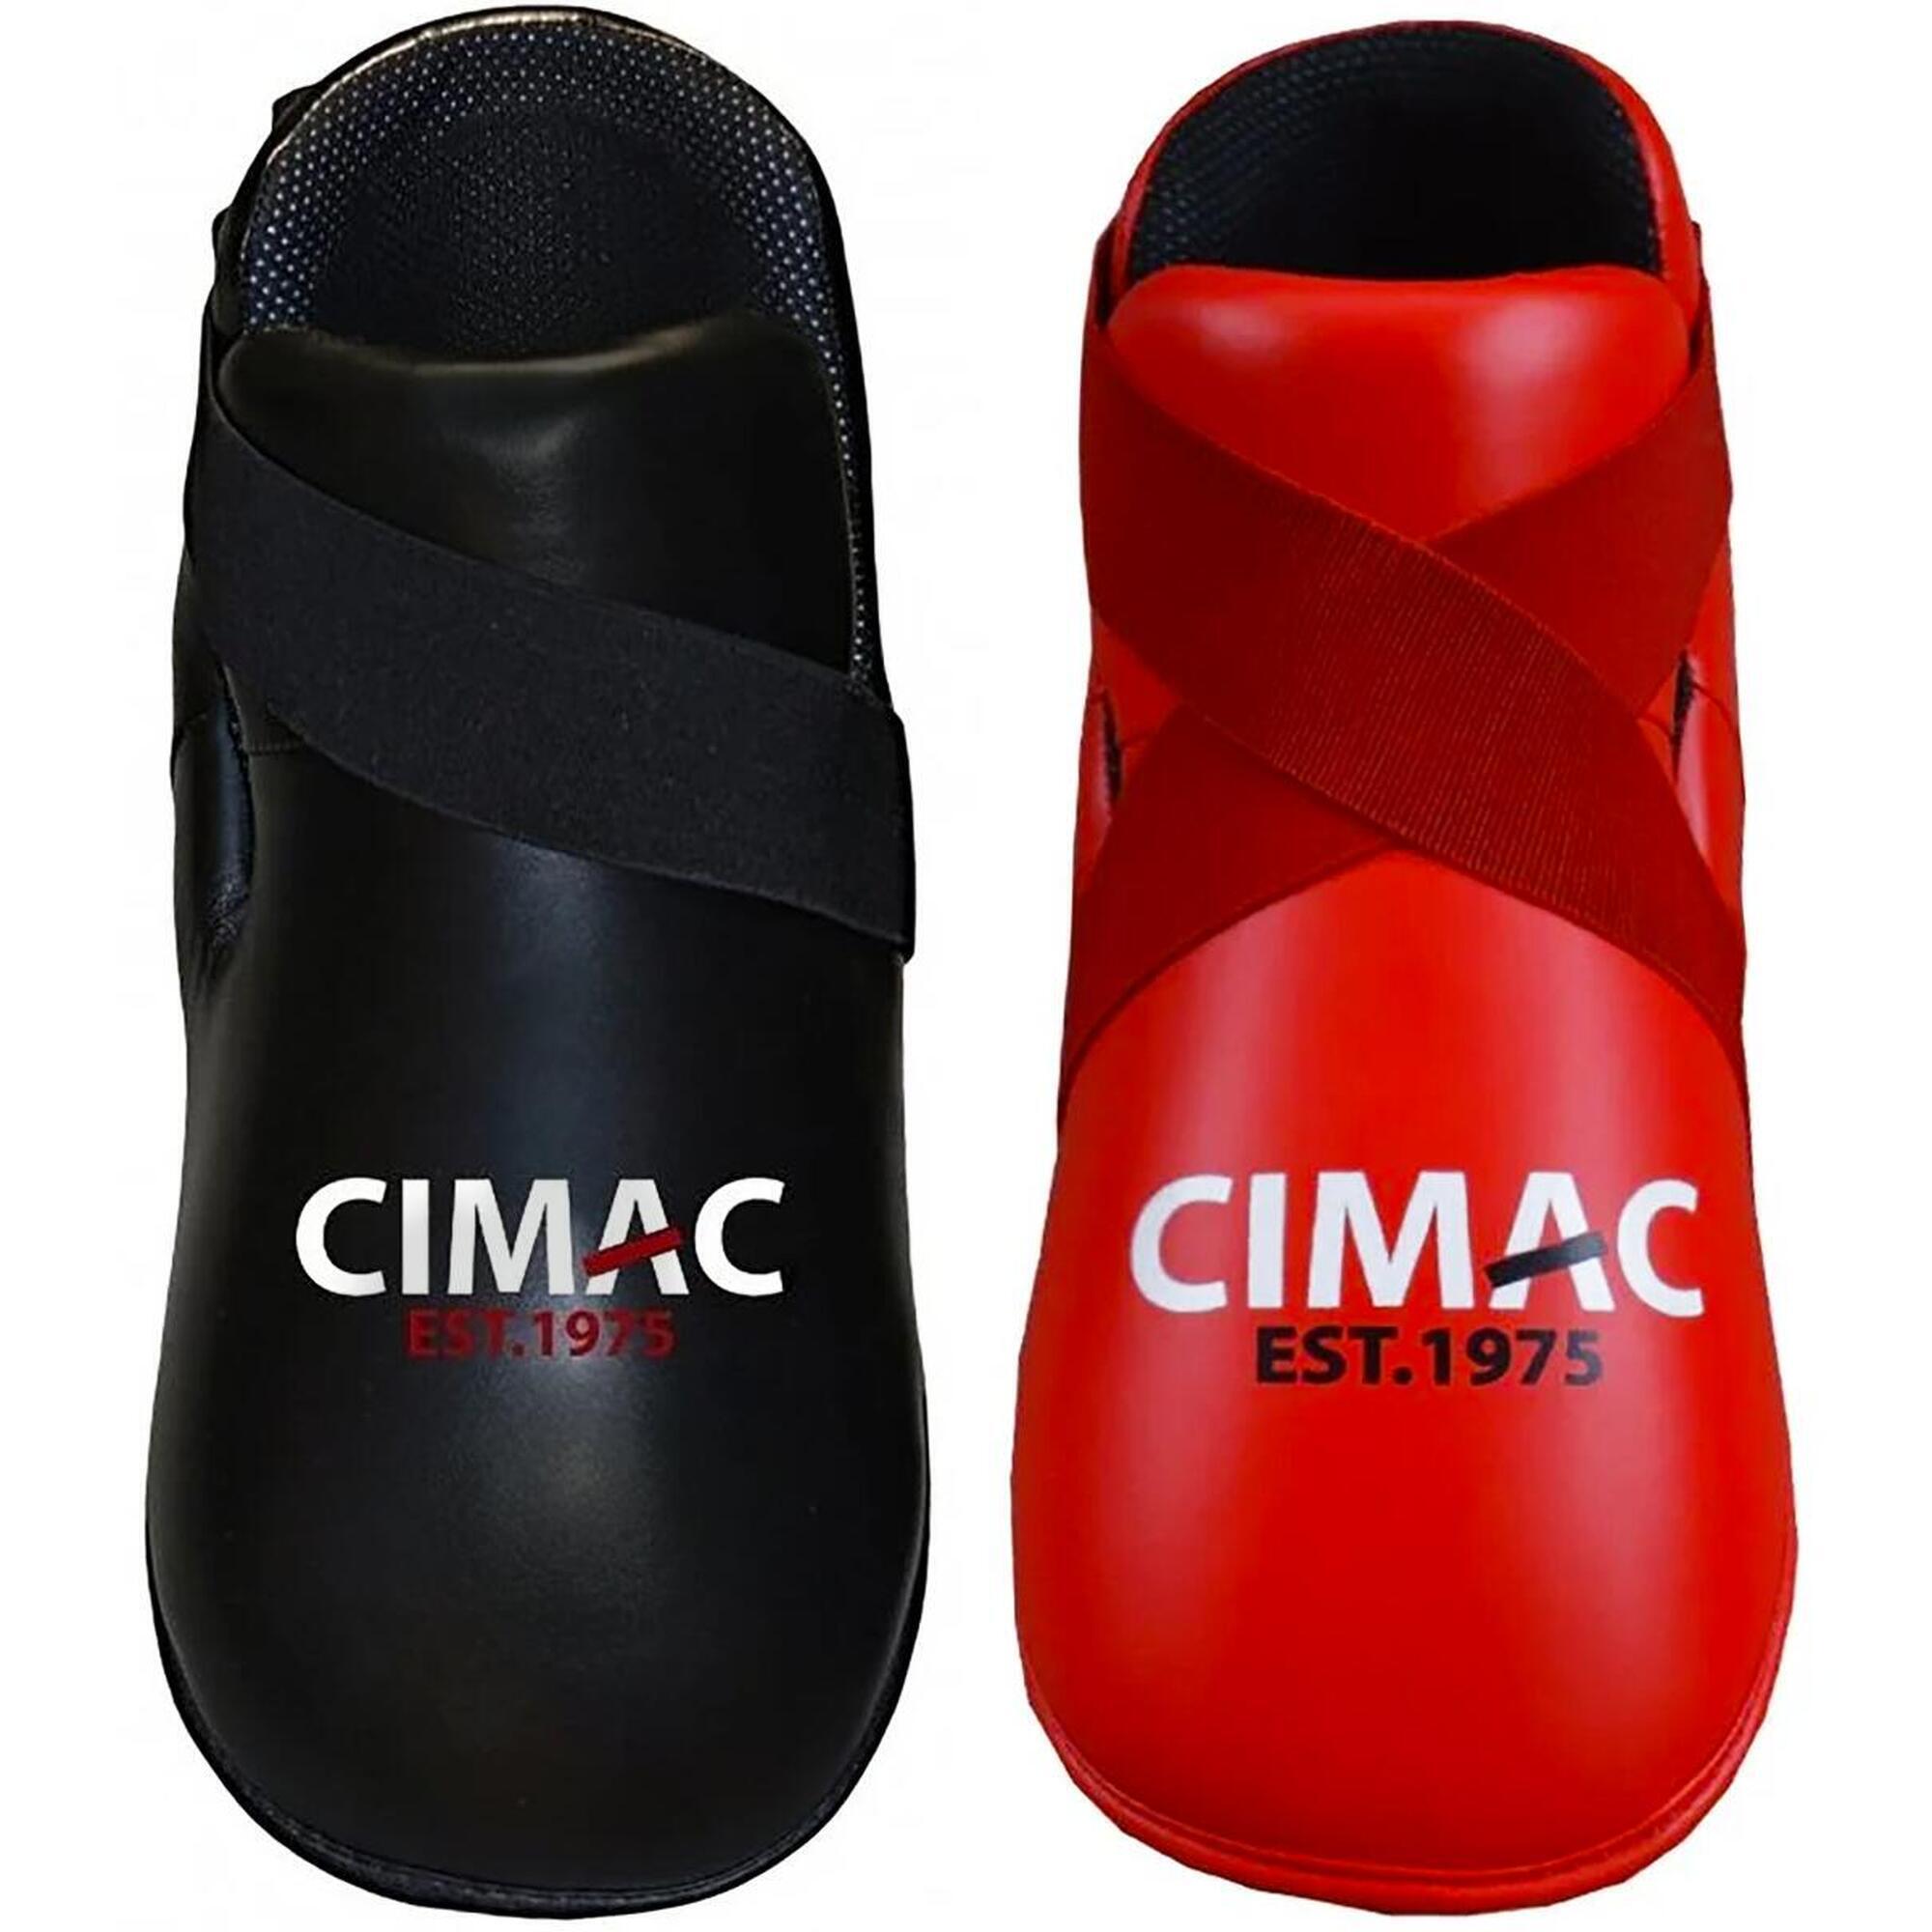 CIMAC Cimac Super Safety Kickboxing Foot Pads